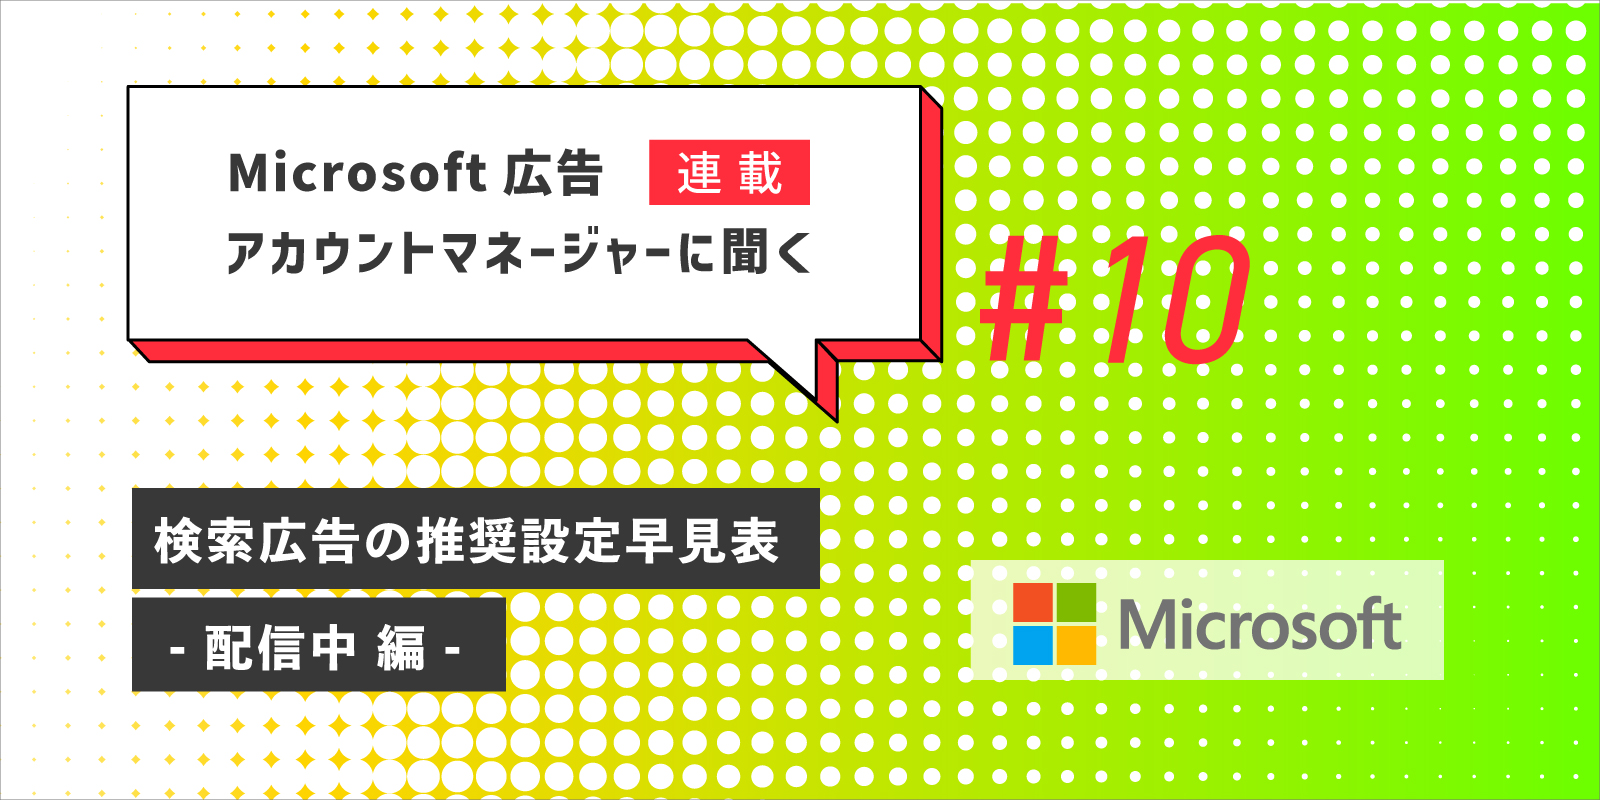 Microsoft 広告アカウントマネージャーに聞く第10回